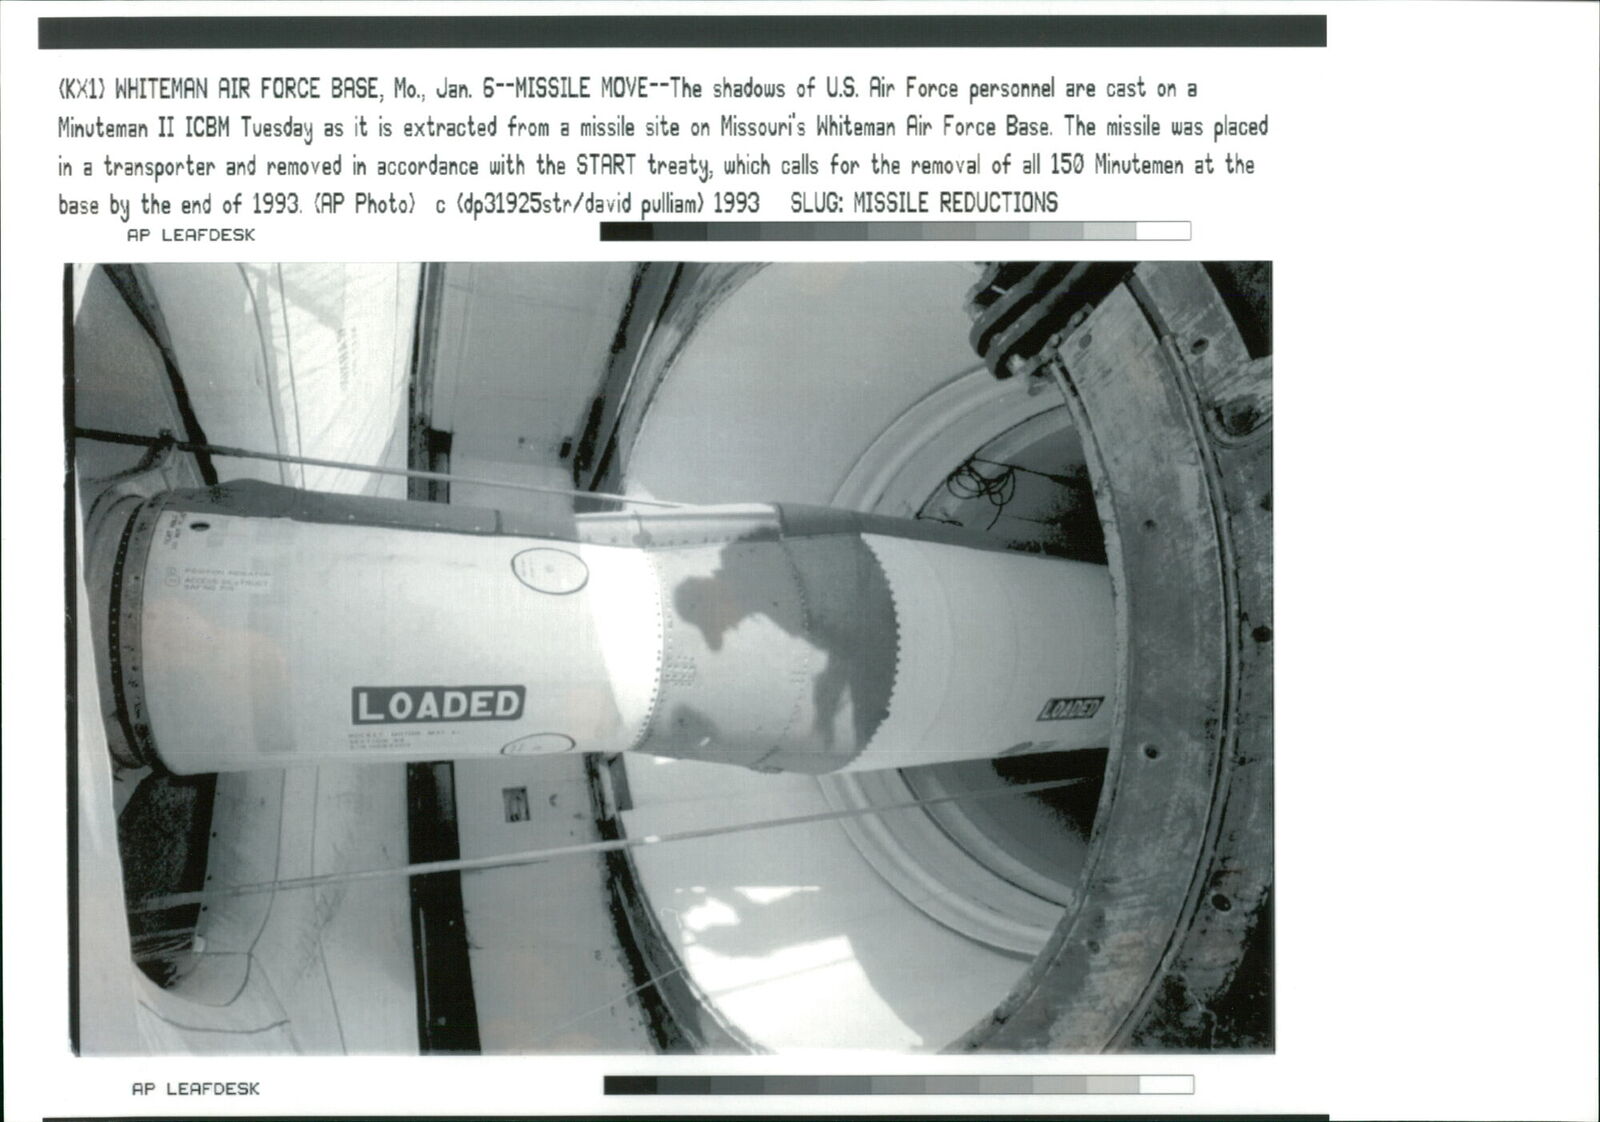 LGM-30 Minuteman - Vintage Photograph 1363294